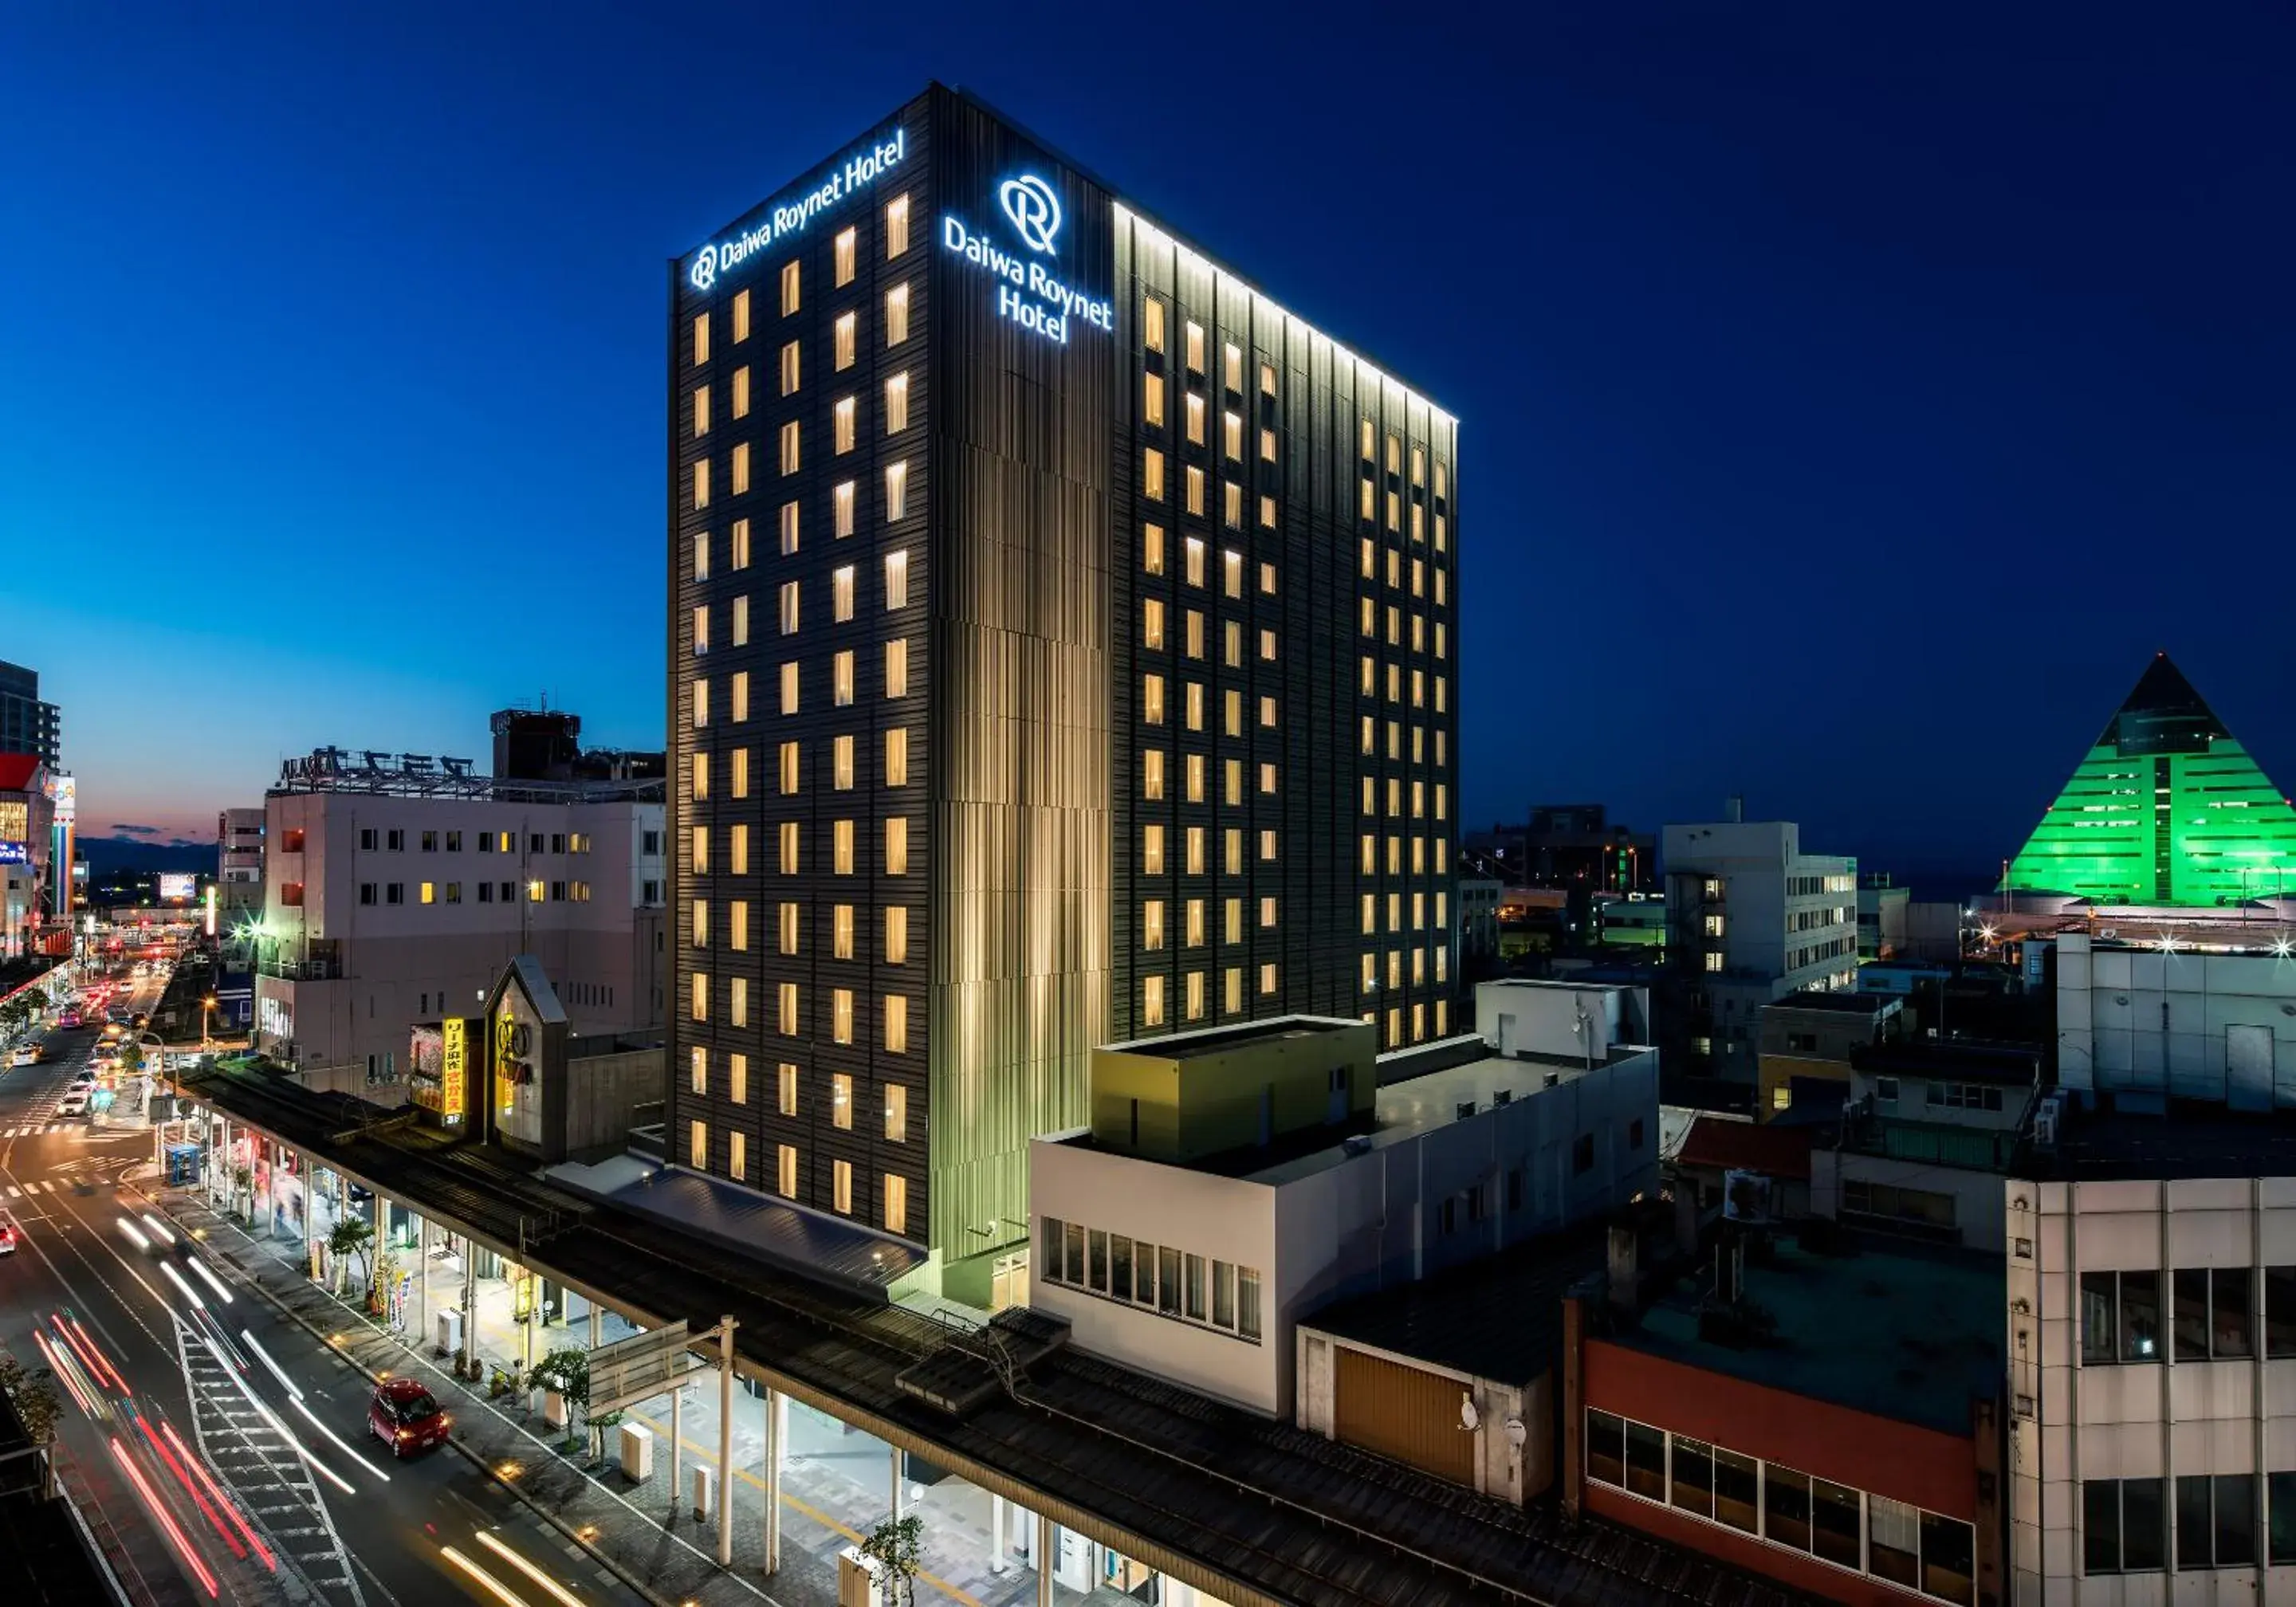 Property building in Daiwa Roynet Hotel Aomori